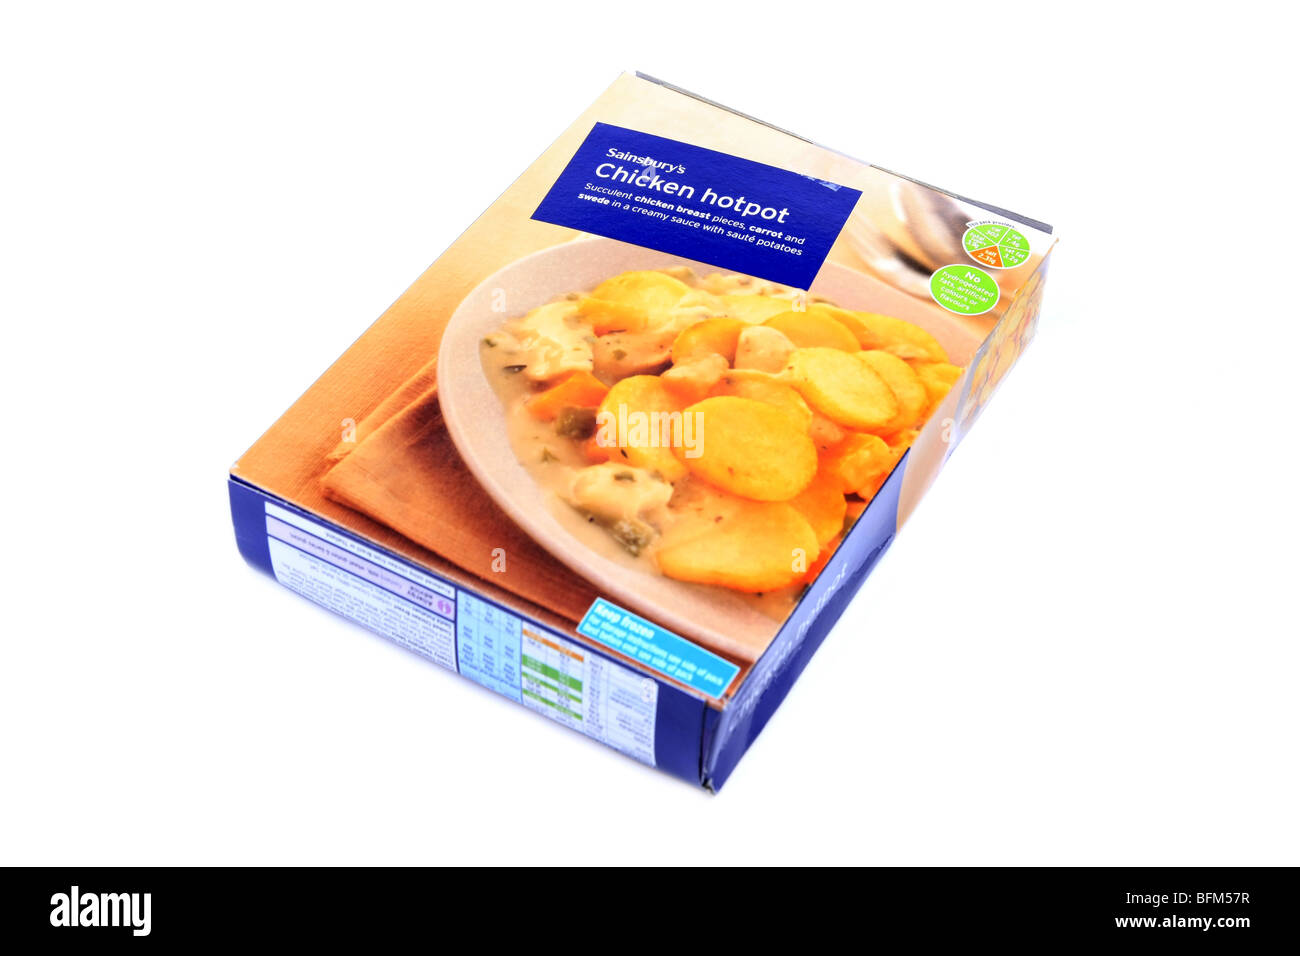 Gefrorene Hähnchen Hot Pot bereit Abendessen Karton-Verpackung Satz vor einem weißen Hintergrund Stockfoto